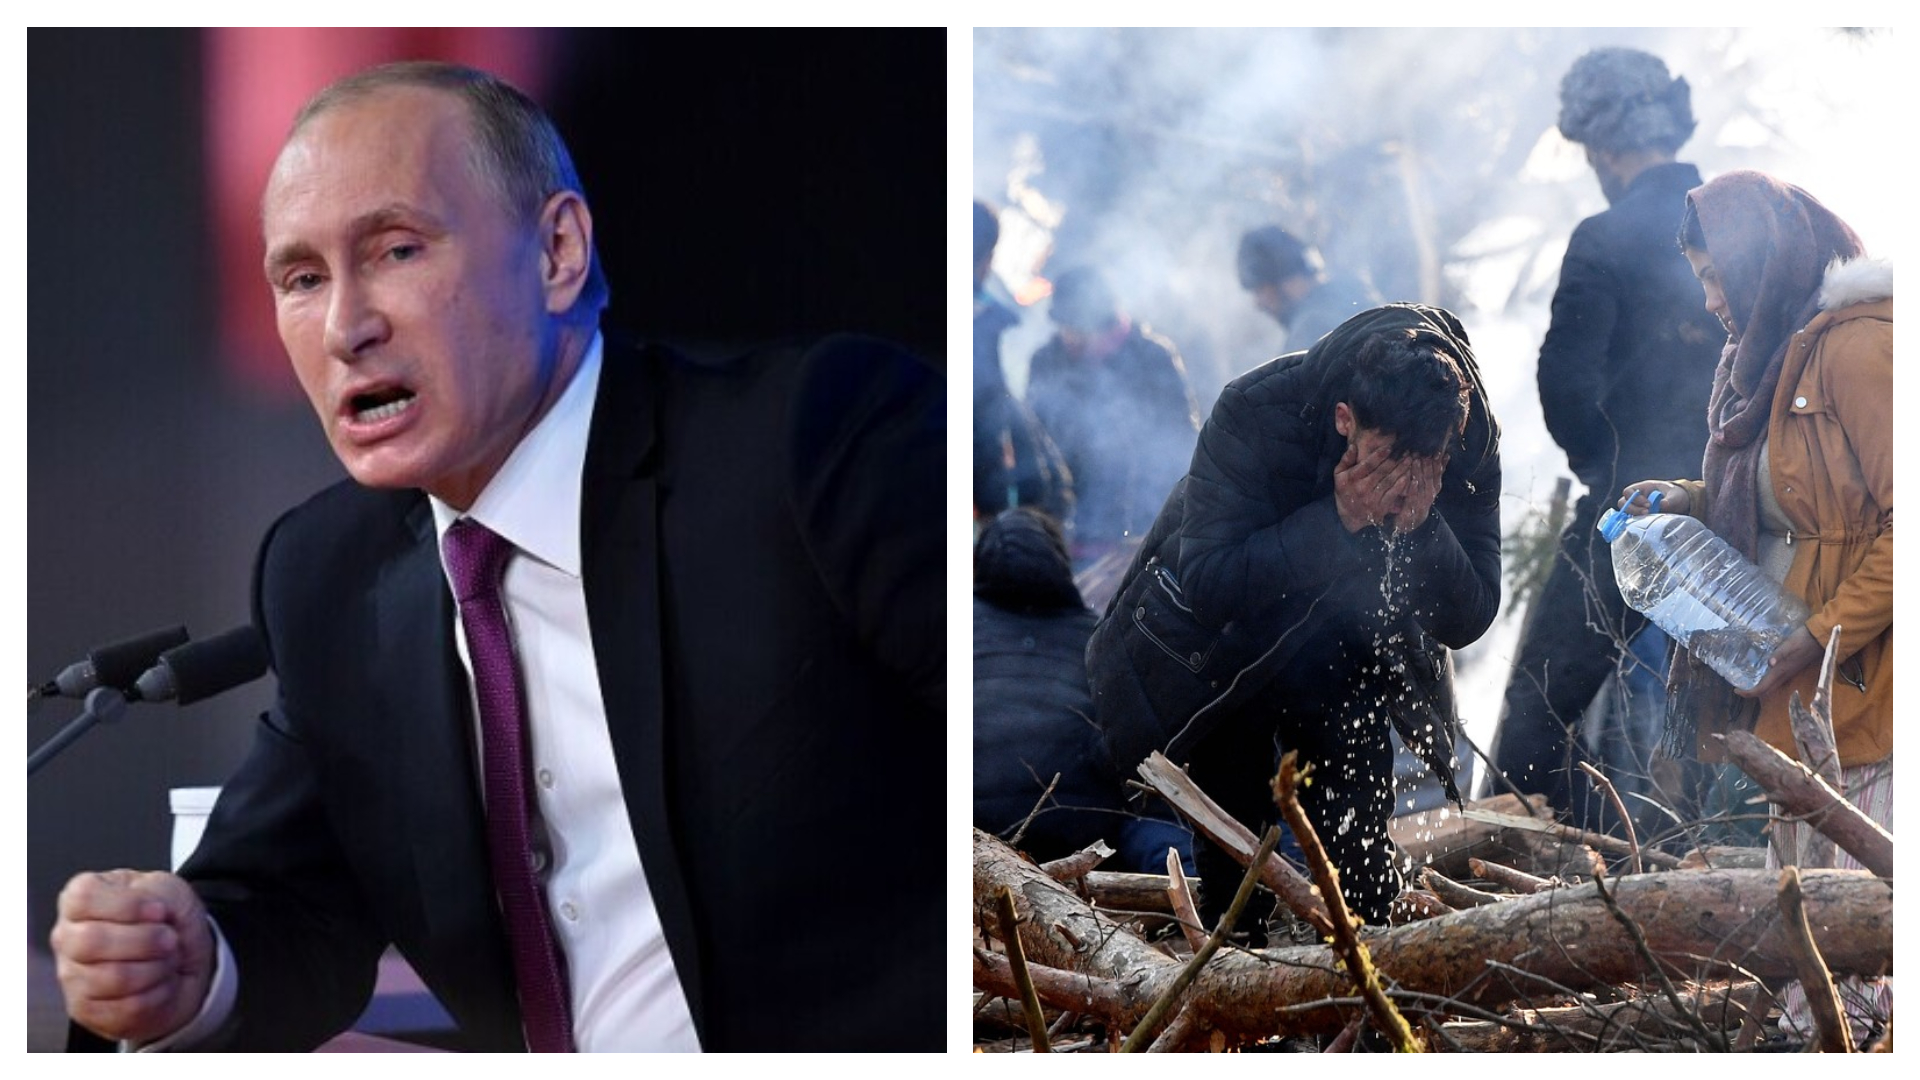 Putin, acuzat că s-ar afla în spatele crizei migranților la frontiera polonezo-belarusă. Lukașenko a răbufnit: Nemernicilor!